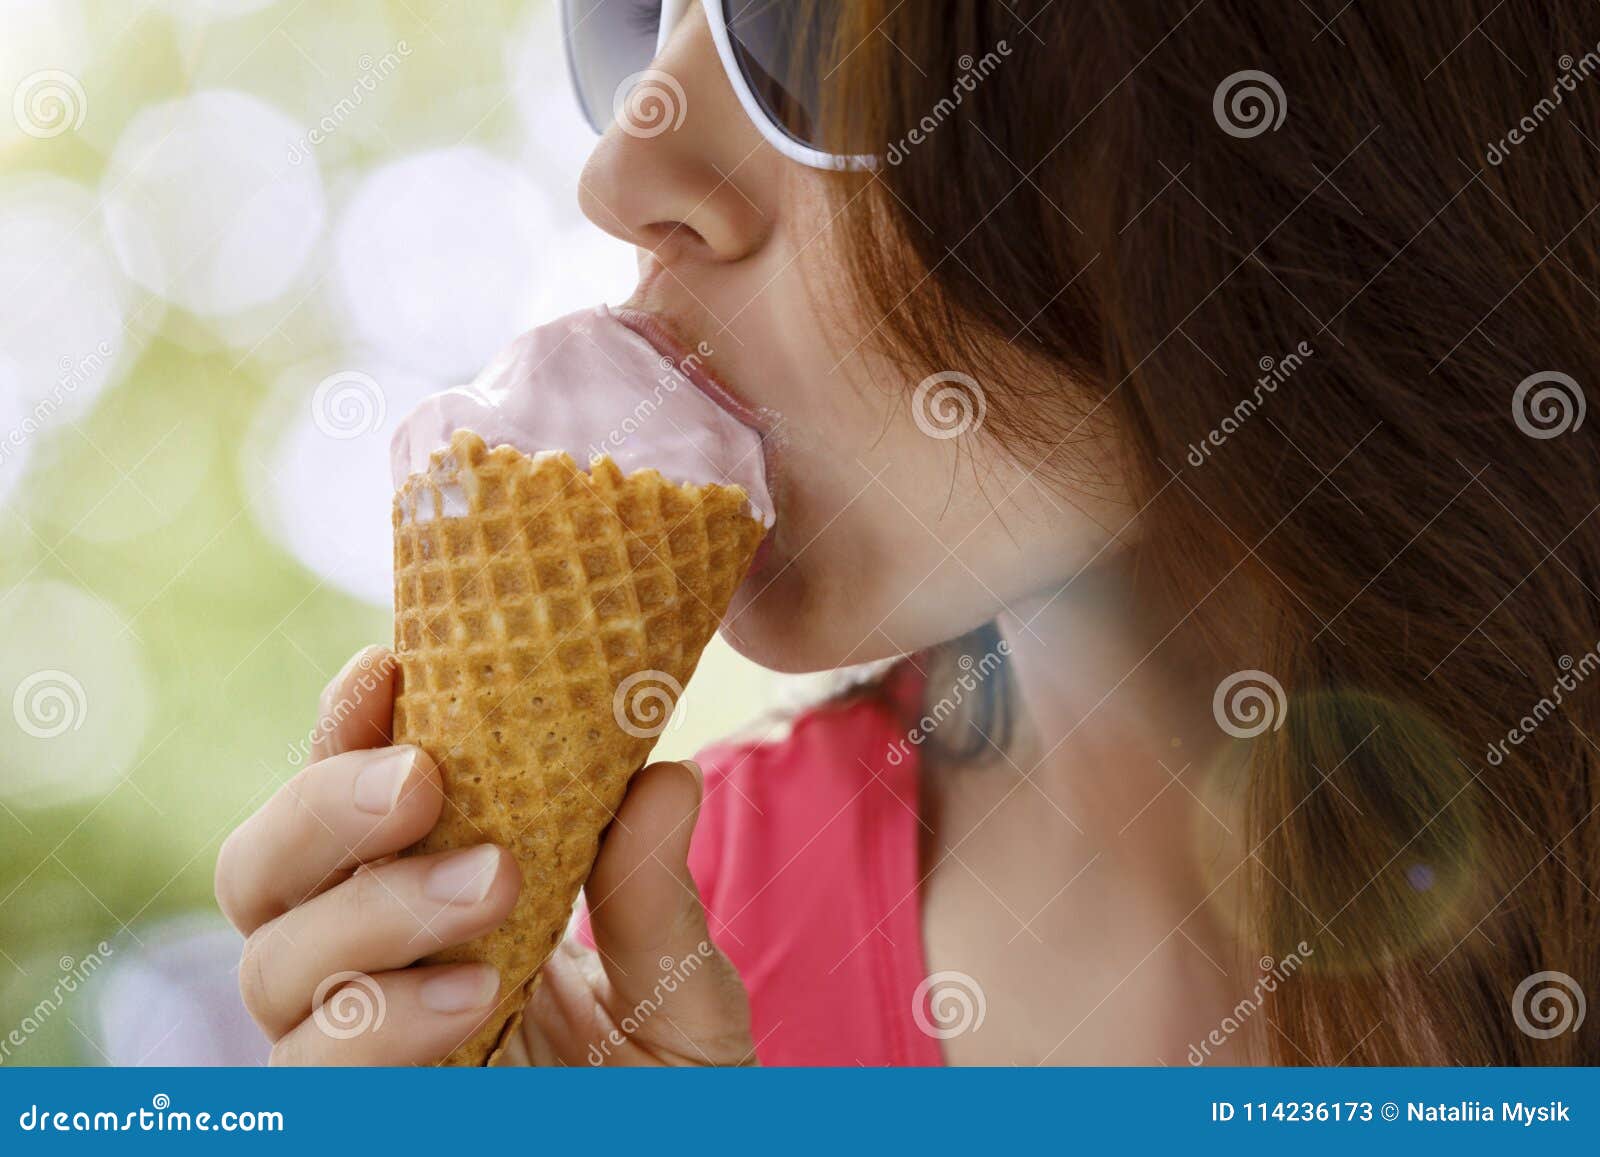 Есть мороженое ночью. Девушка ест мороженое вид сверху. Девушка повернута спиной ест мороженое. Арабская женщина есть мороженное. Фото крупным планом как девушка ест мороженное.